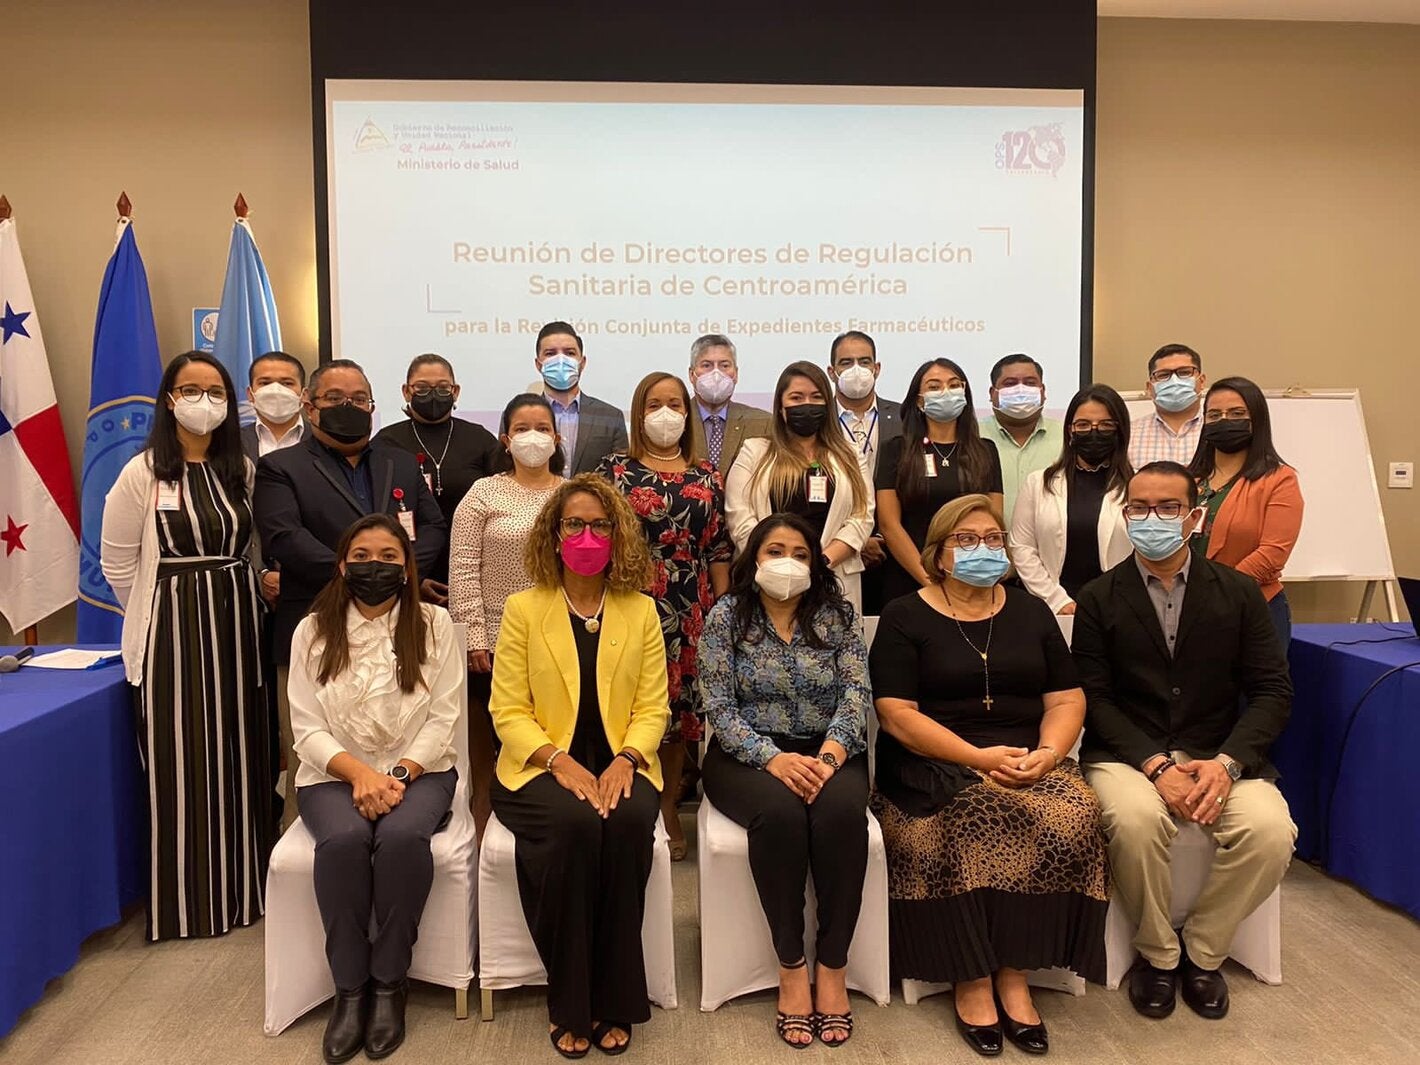 Reunión de Directores de Regulación Sanitaria de Centroamérica